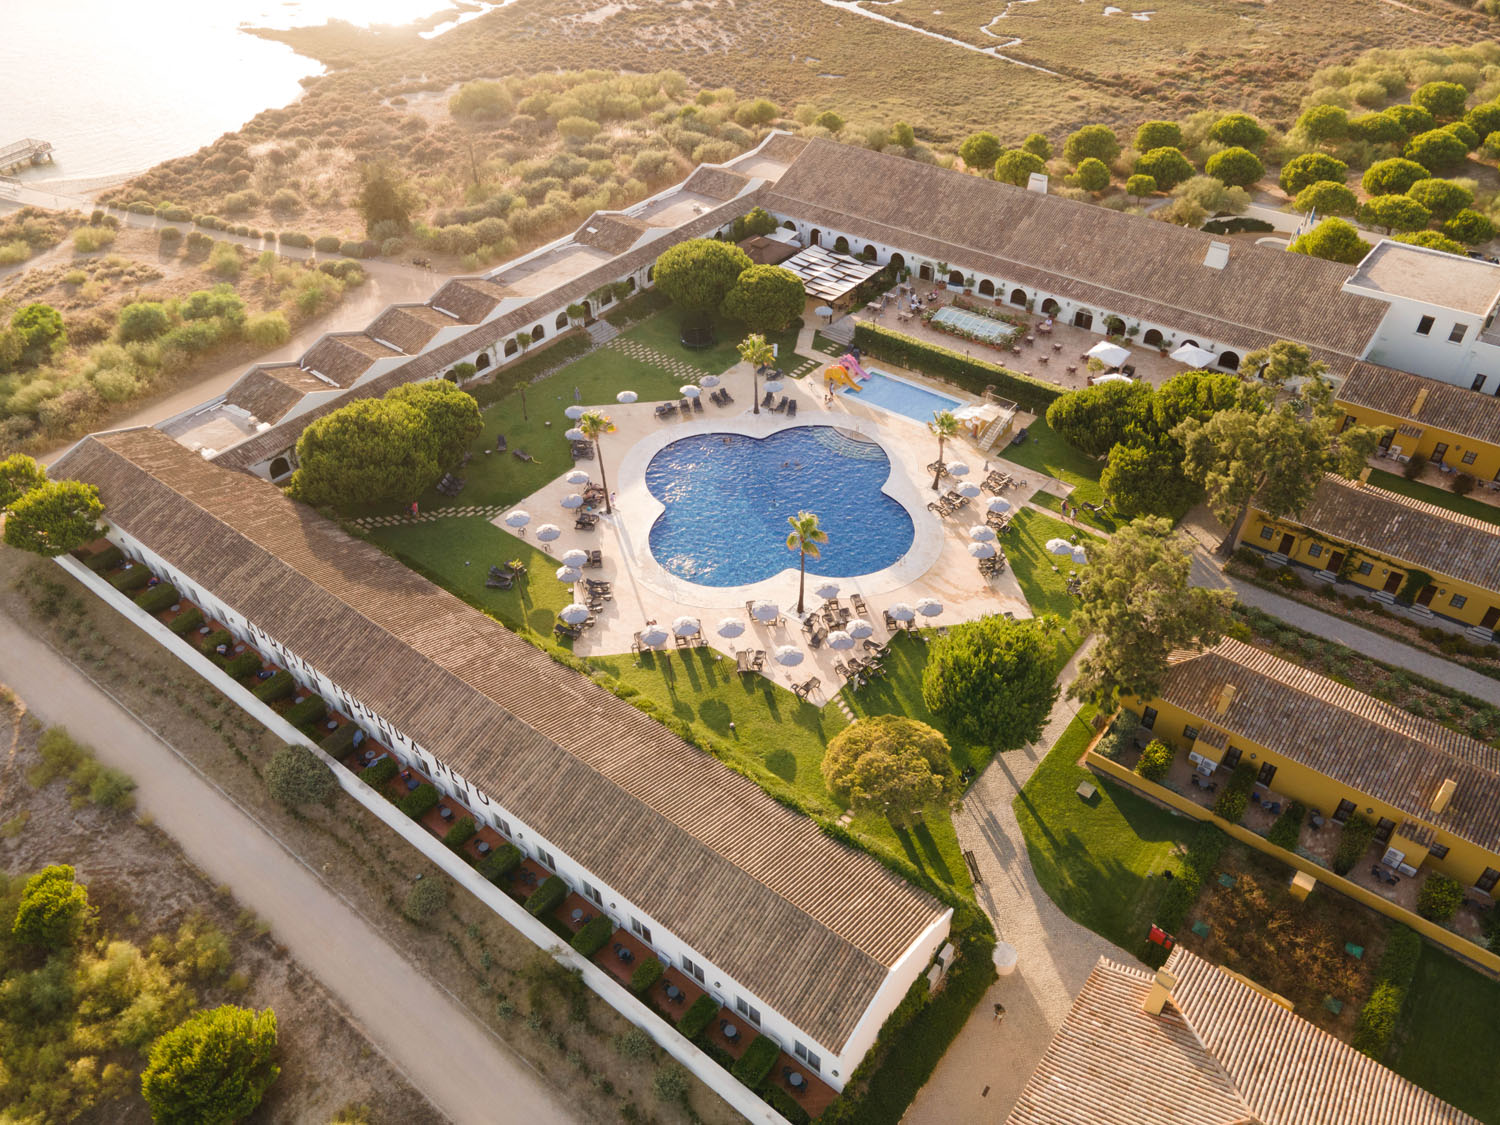 Hotel da Vila Galé em Portugal, próximo ao rio no Parque Nacional de Ria Formosa - Foto: reprodução
